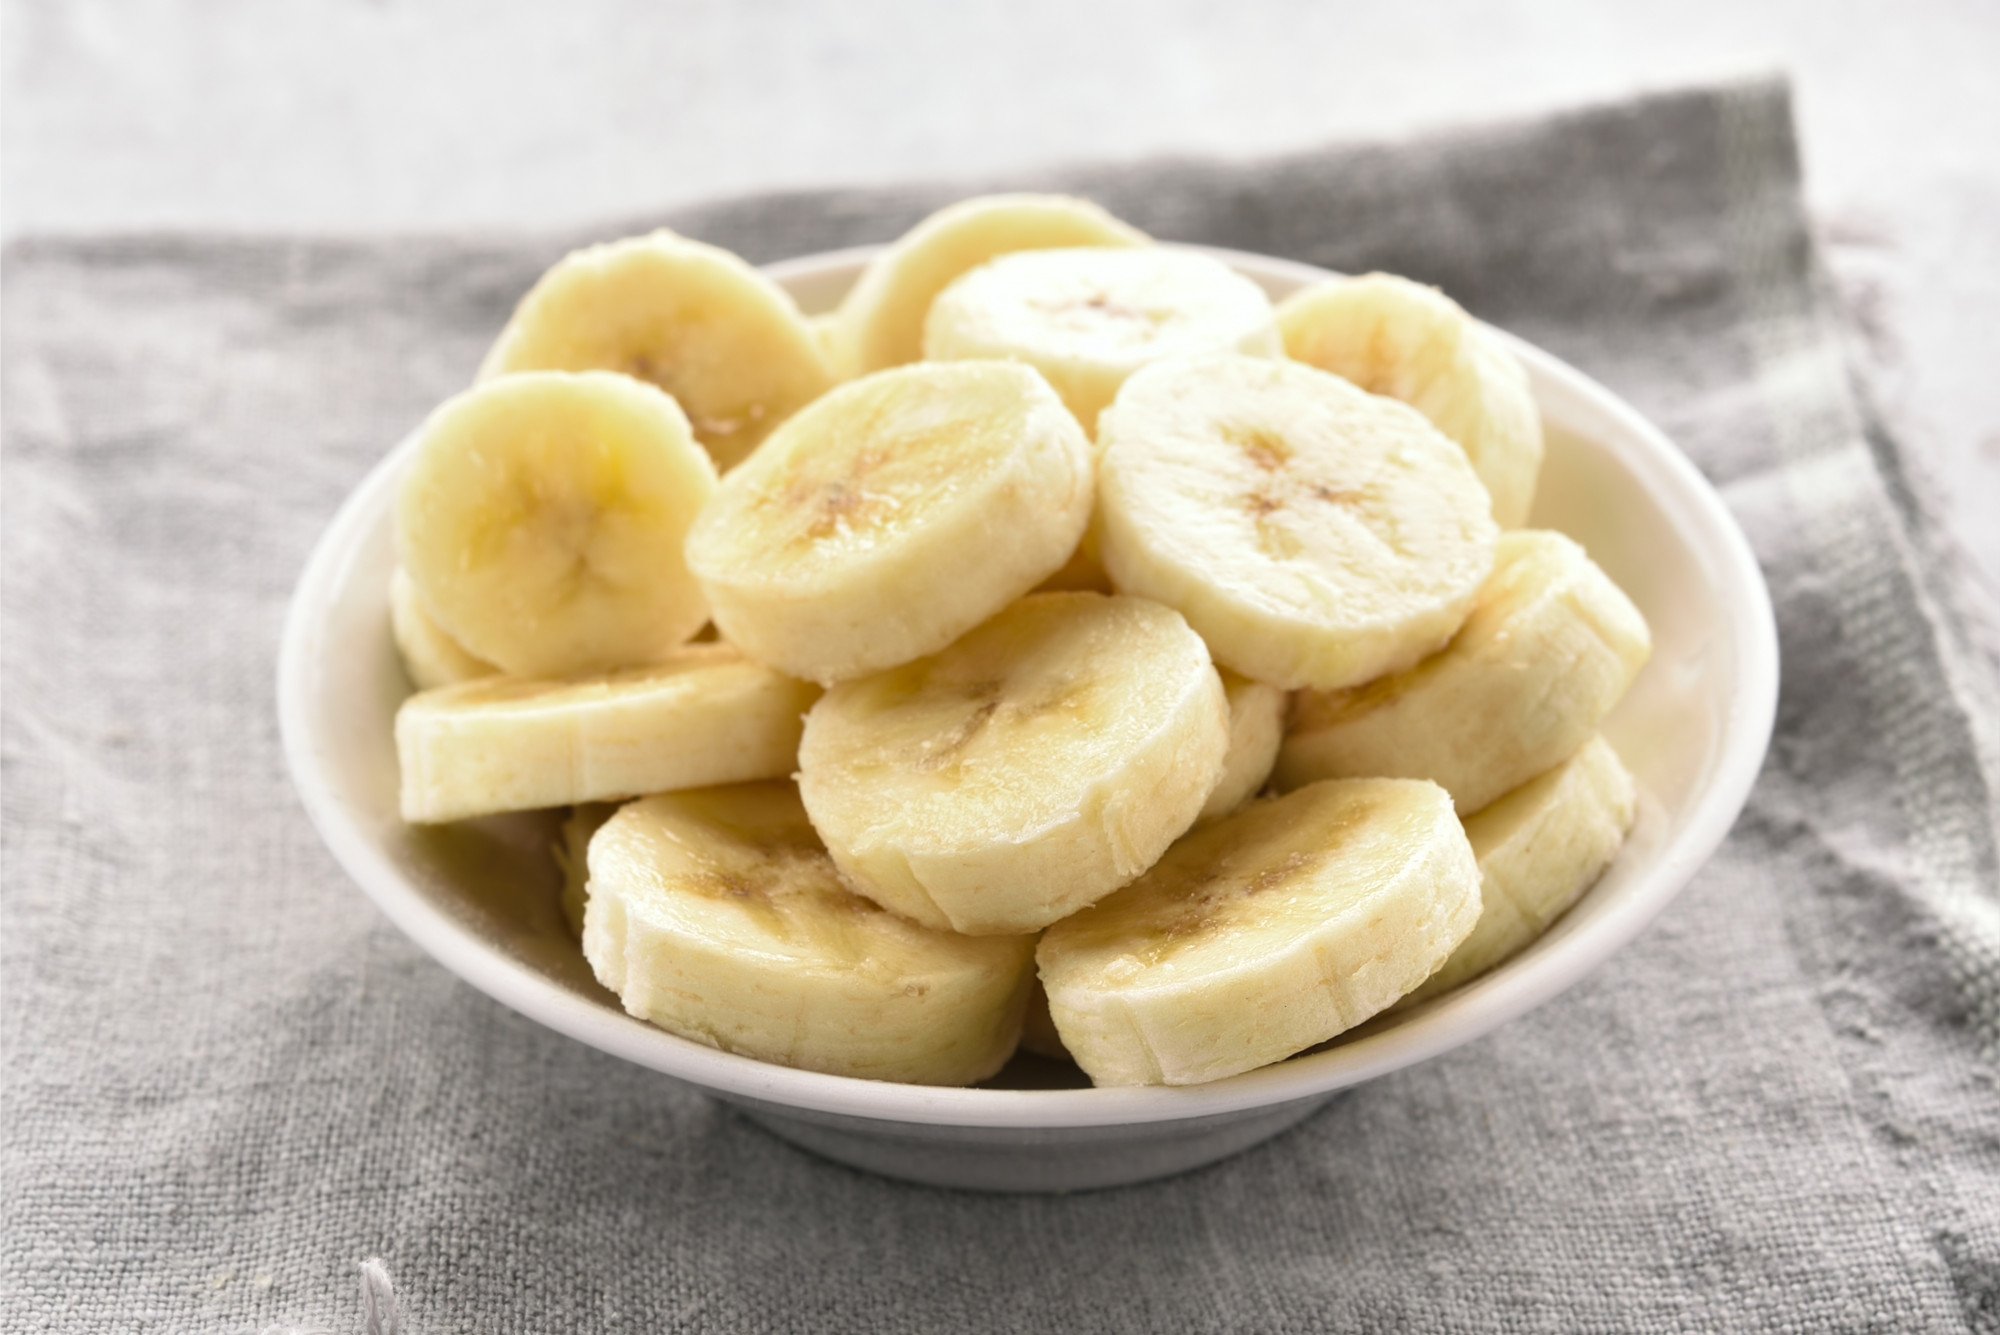 Descubra sete formas de incluir a banana na sua dieta - Minha Vida